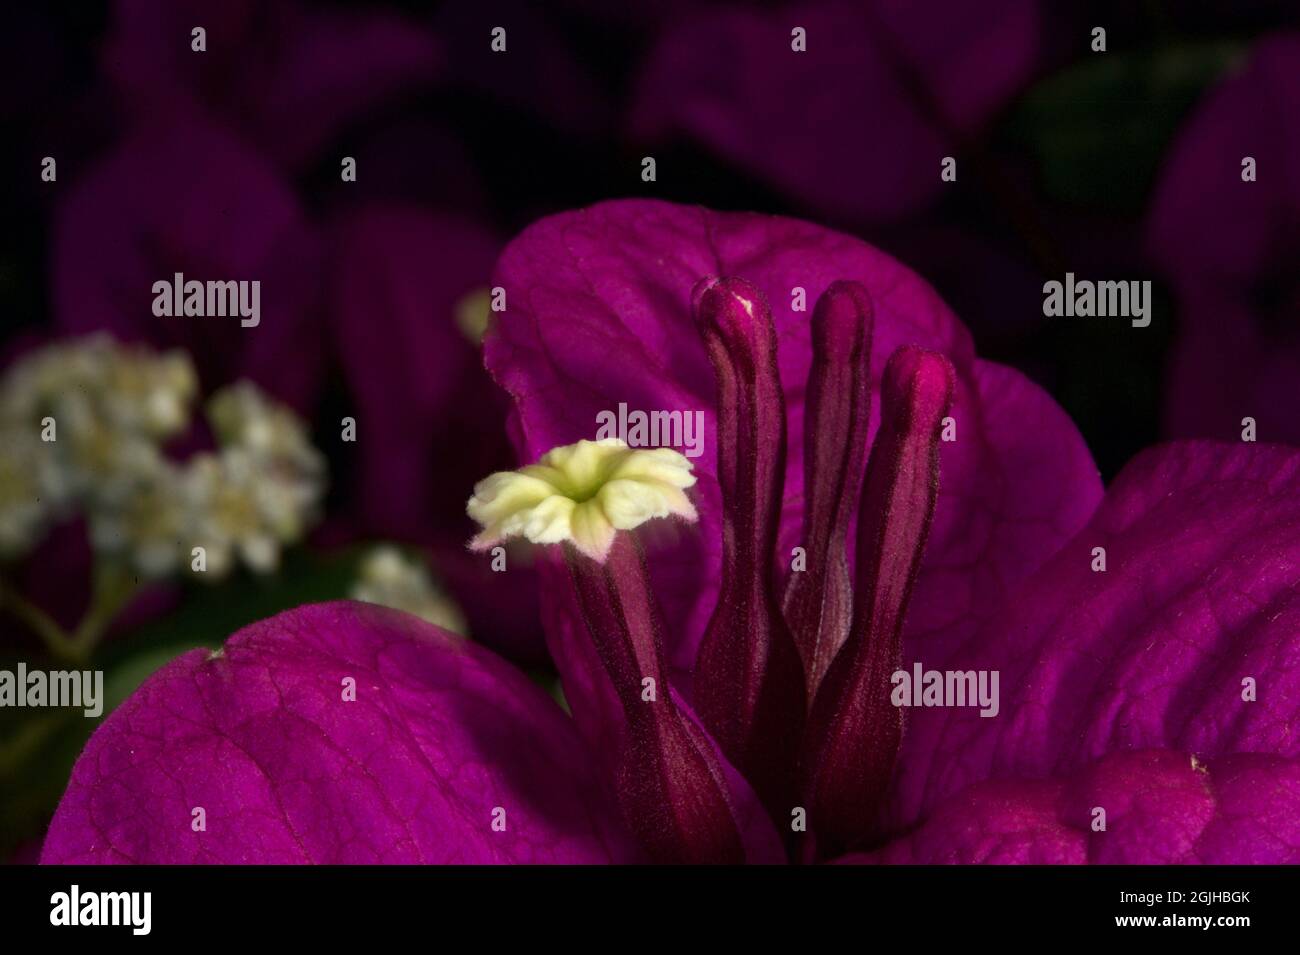 Une fleur de Bougainvillea (Bougainvillea glabra) et des étamines à l'intérieur des feuilles violettes modifiées, qui ressemblent à une fleur. Banque D'Images